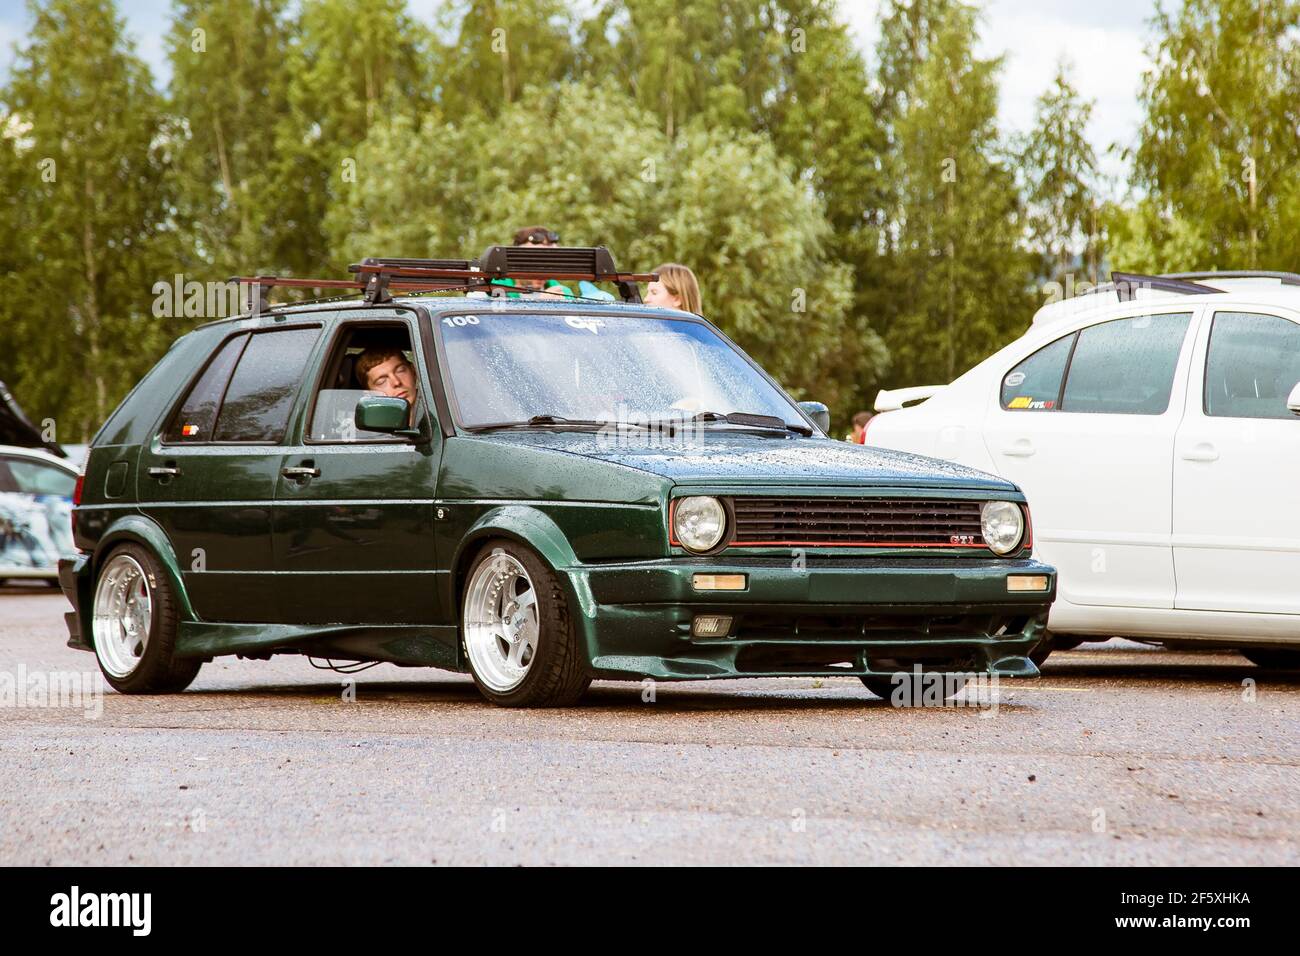 Moscou, Russie - 06 juillet 2019 : bas Volkswagen Golf 1 en vert avec de larges disques polis. Debout dans le parking, un homme s'ennuie à l'intérieur. Banque D'Images